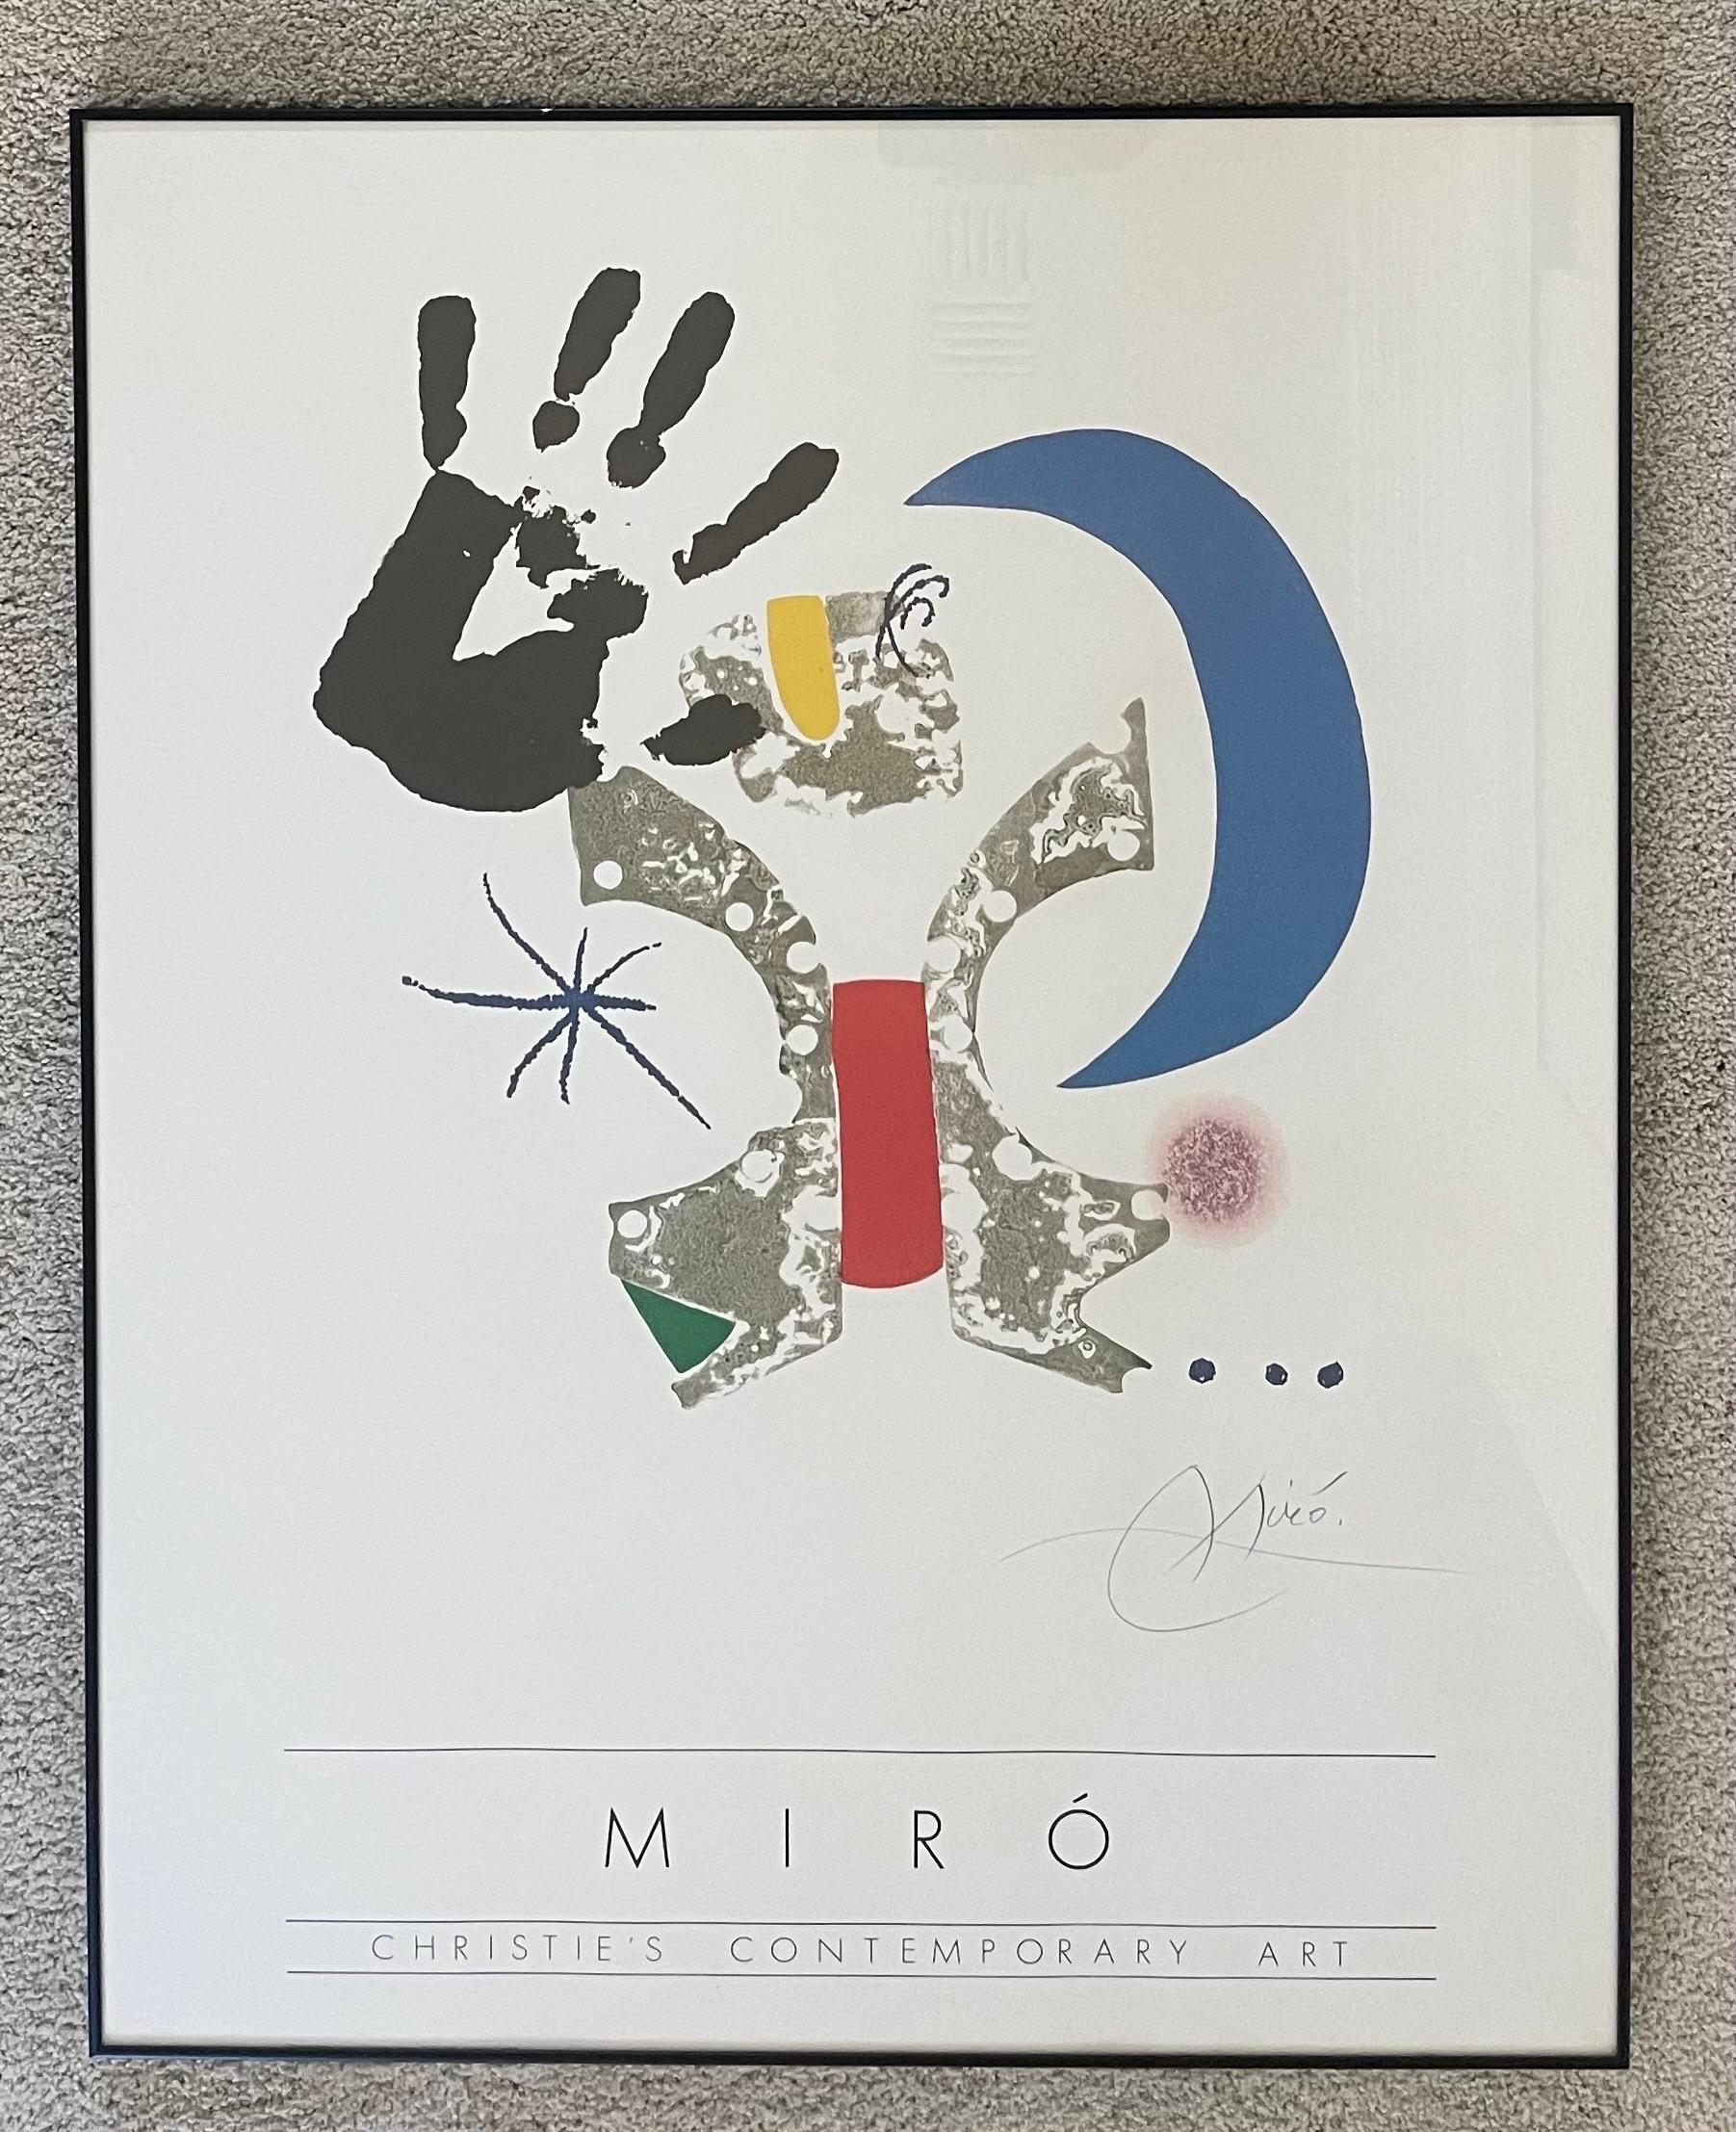 Affiche d'art lithographique du milieu du siècle Joan Miro / Christies Contemporary, circa 1980, à collectionner. L'affiche, qui est une reproduction d'une pièce du portfolio 